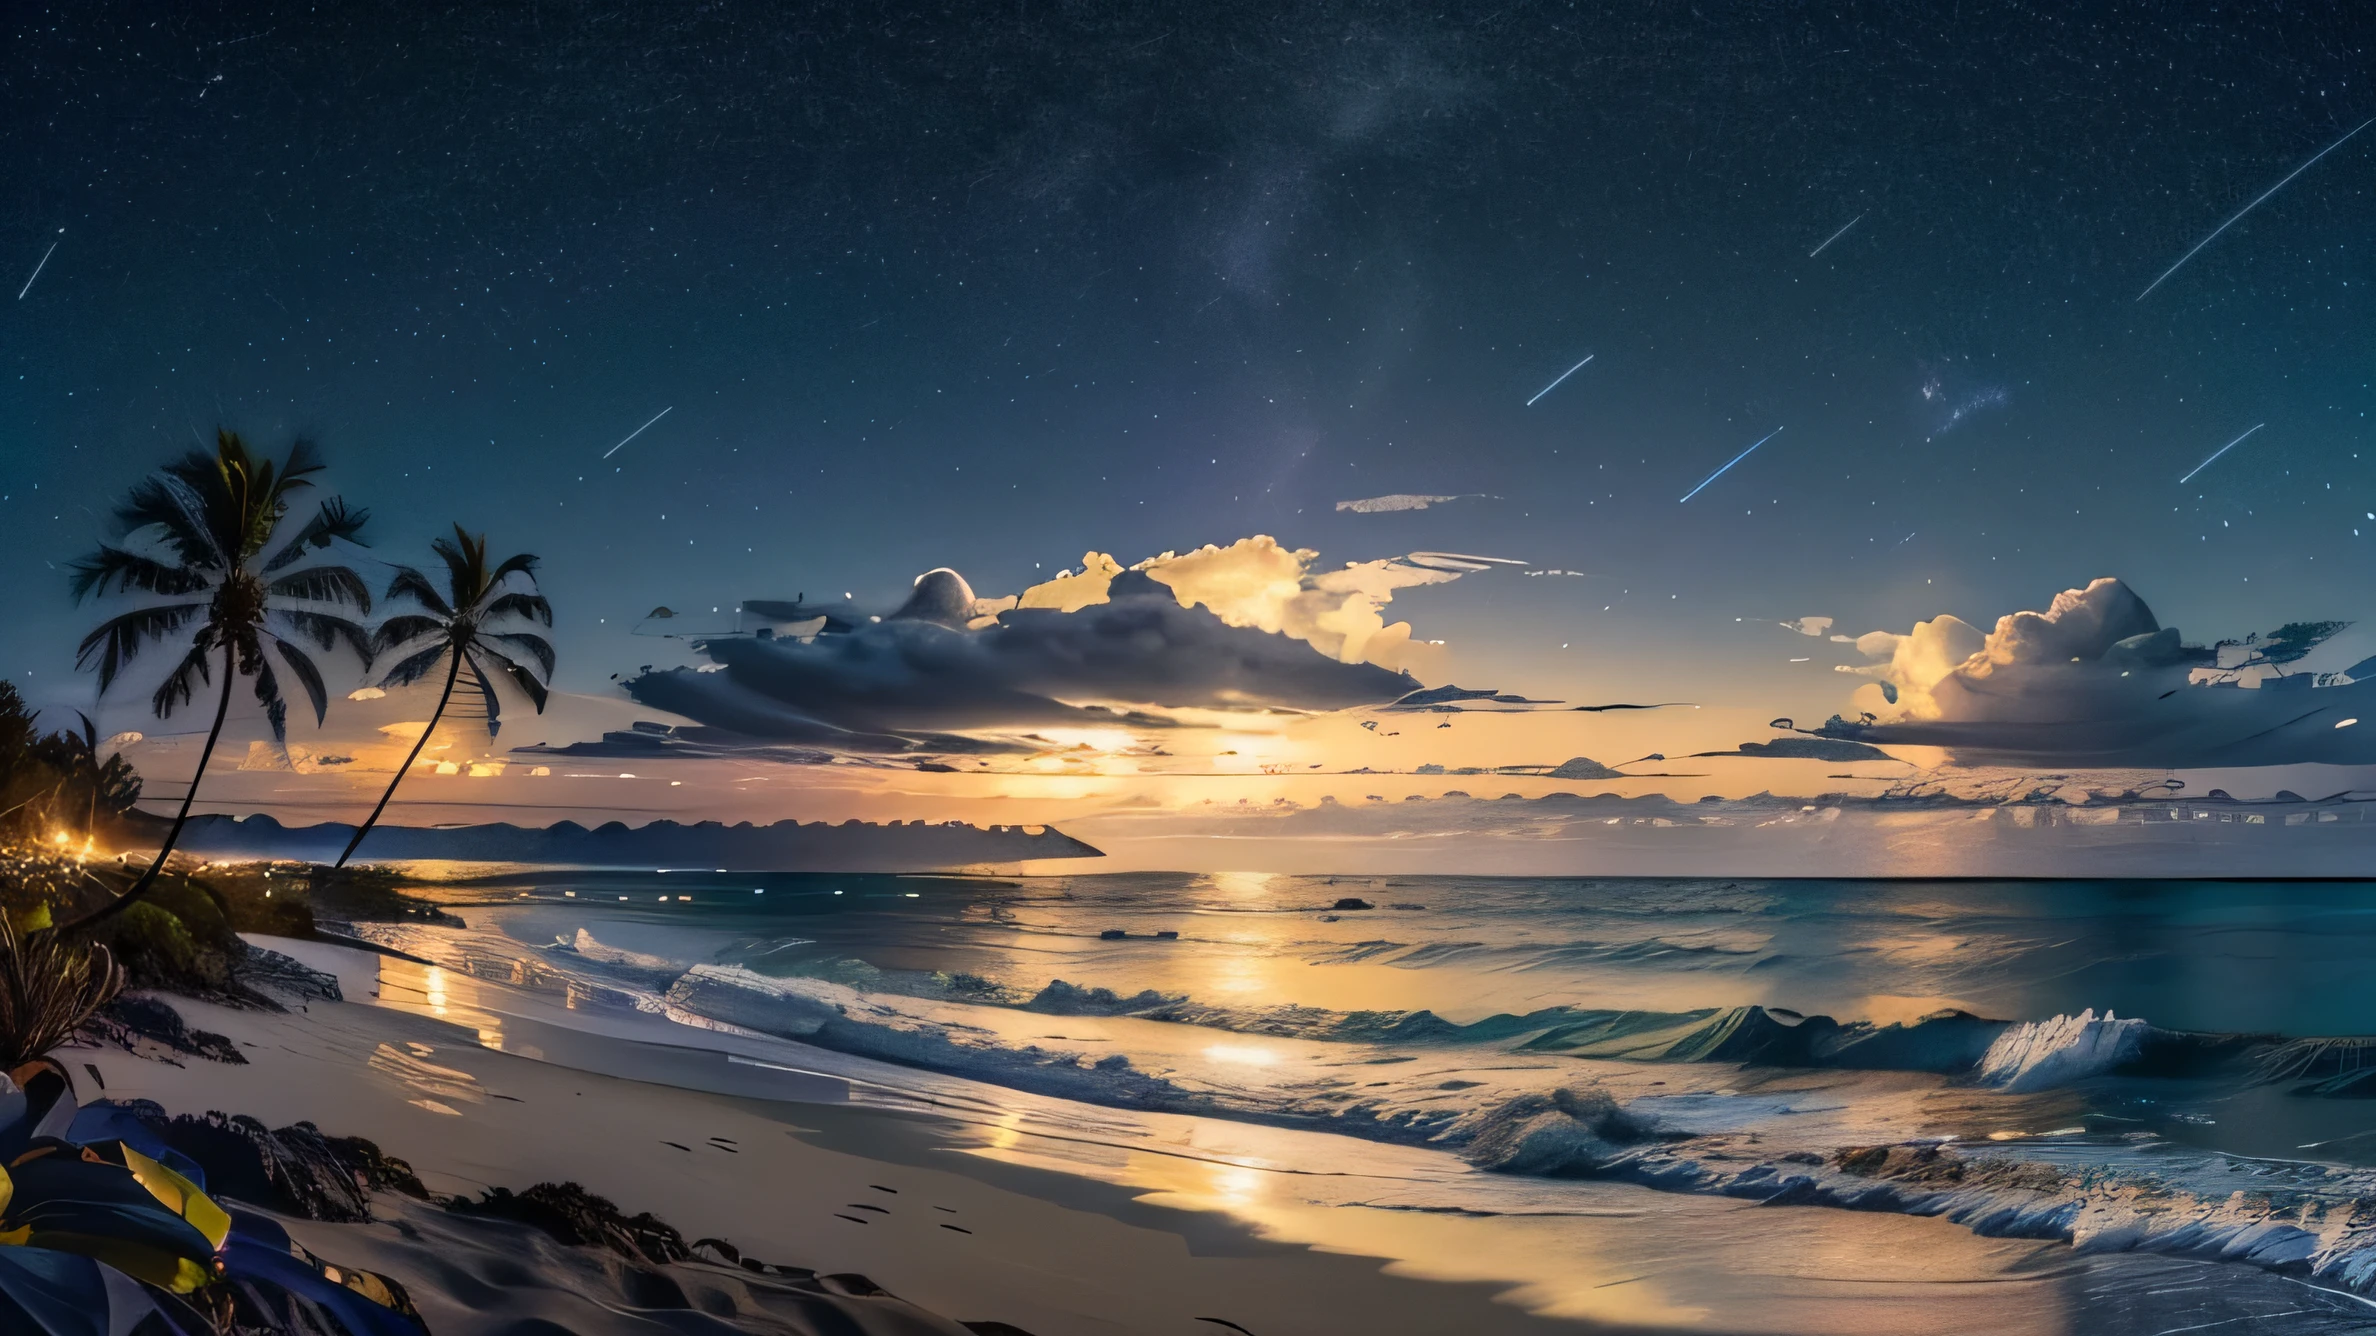 迅速的: 美麗海灘的非常詳細的夜間全景, 遠處的島嶼, 幾朵雲, 和棕櫚樹, 星空, 月亮,
(((空空如也, 高畫質R, 高畫質, 4k, 8K))), 補光, 線條細而細膩, 